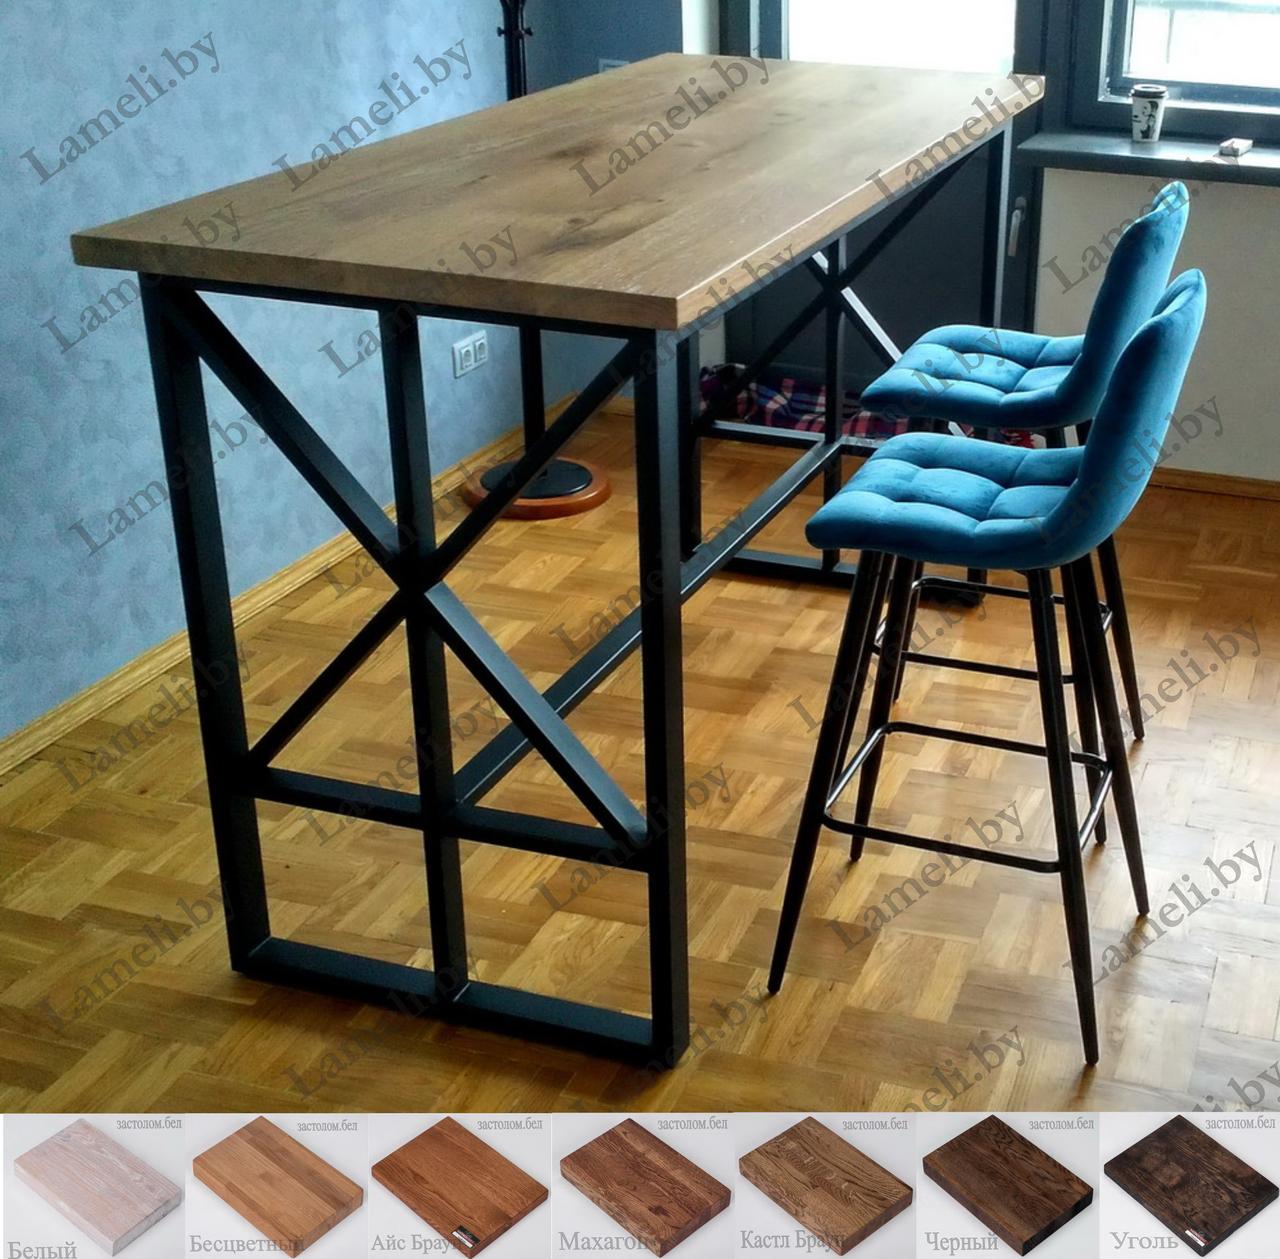 Барный стол на цельно сварном подстолье О-Ж из массива ДУБА, ЛДСП или постформинга. Цвет и размеры на выбор.